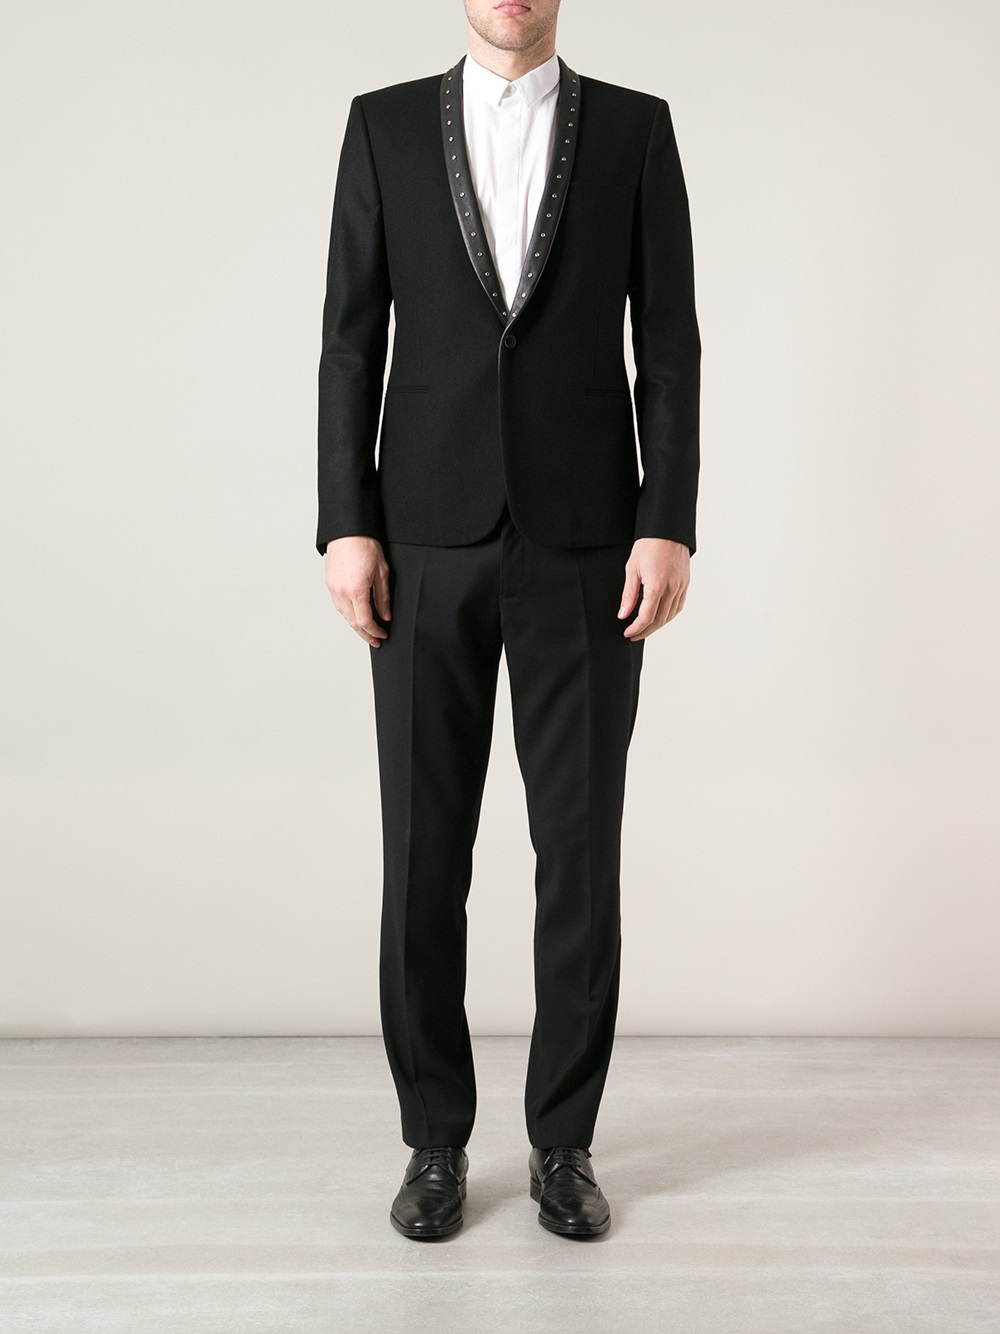 Saint Laurent Studded Tuxedo Blazer in Black for Men - Lyst